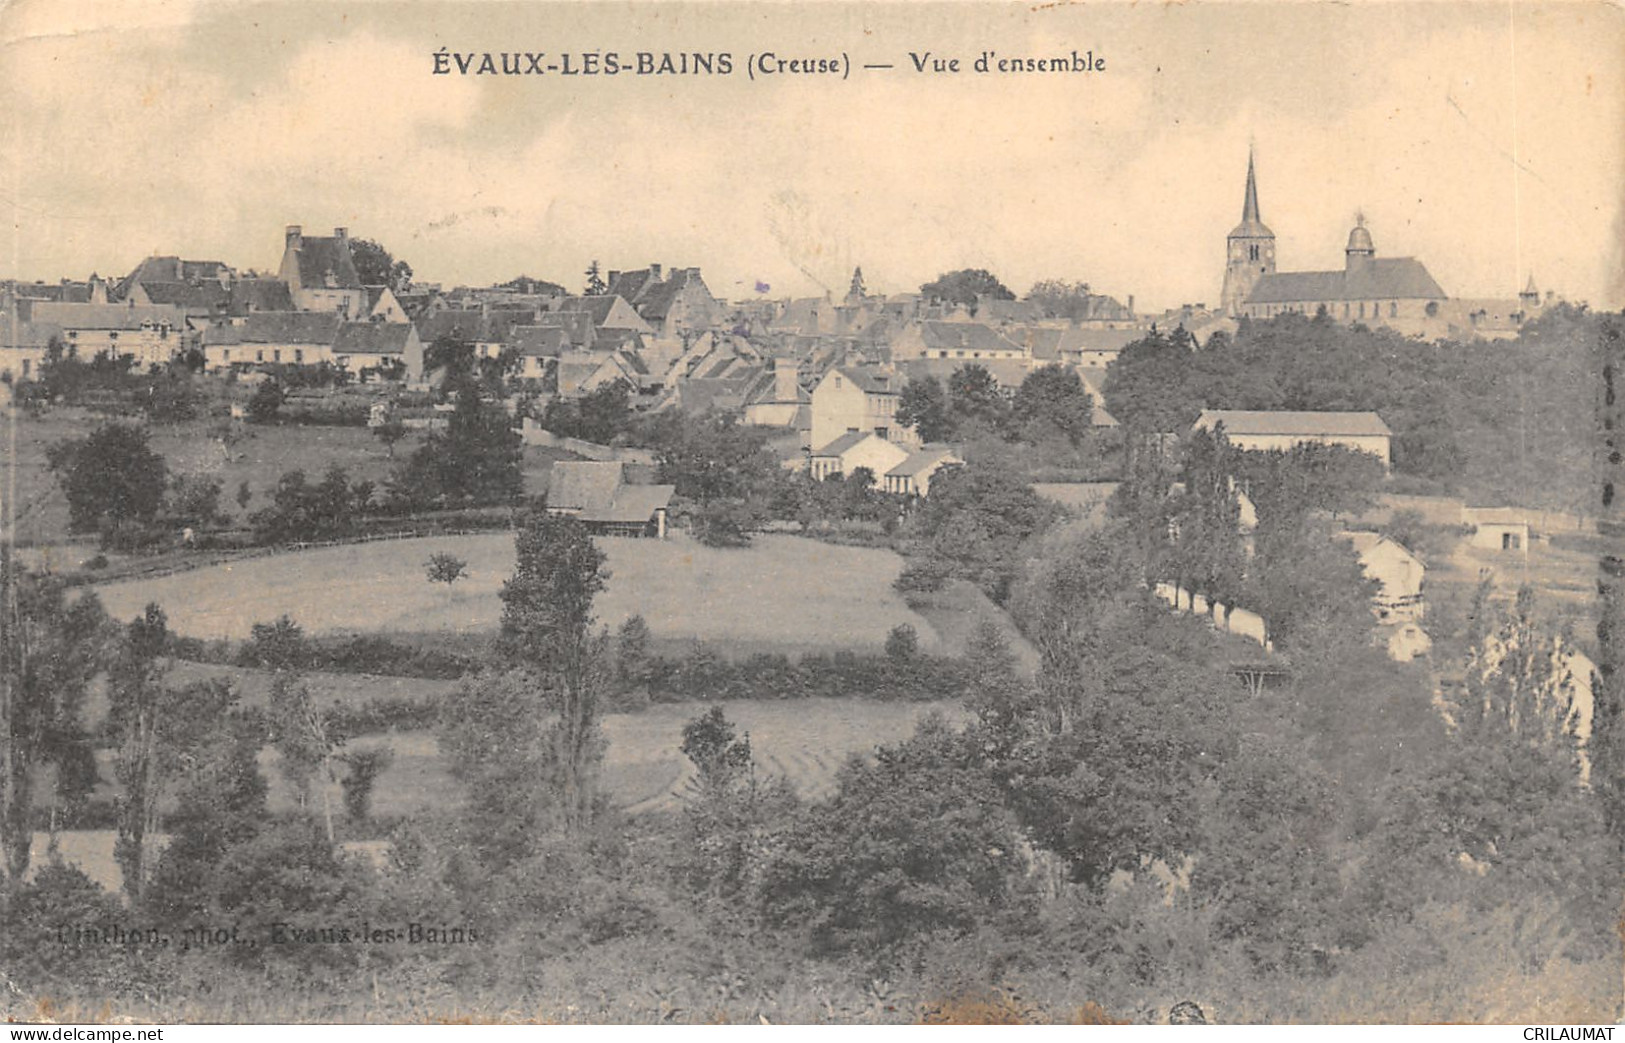 23-EVAUX LES BAINS-VUE GENERALE-N T6020-A/0173 - Evaux Les Bains